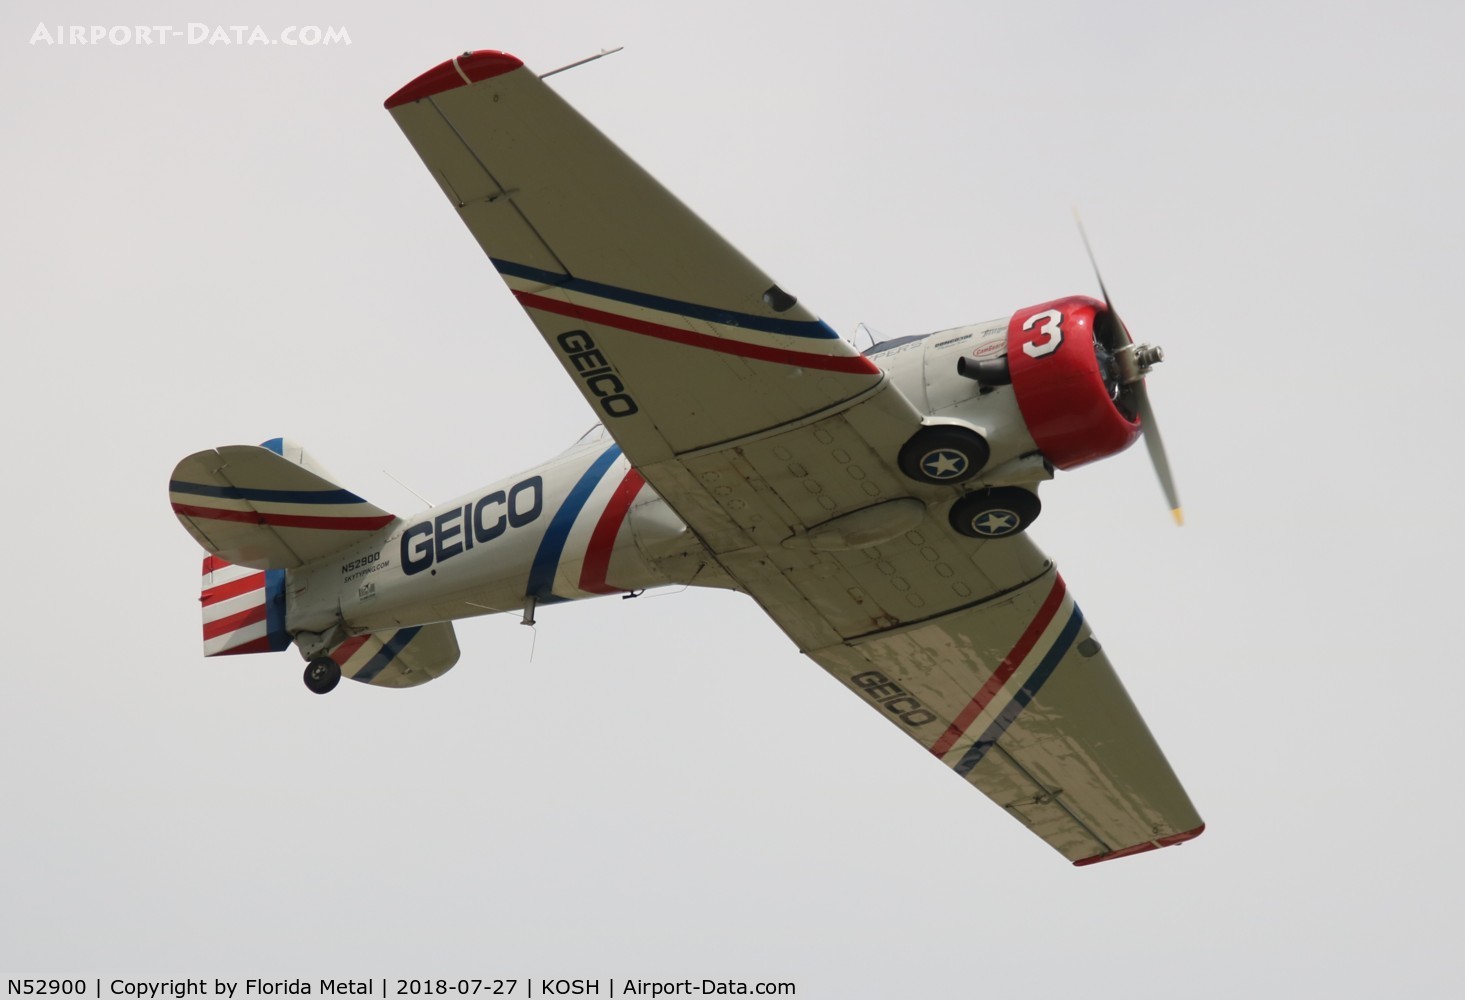 N52900, 1940 North American SNJ-2 Texan C/N 2010, Geico skytypers